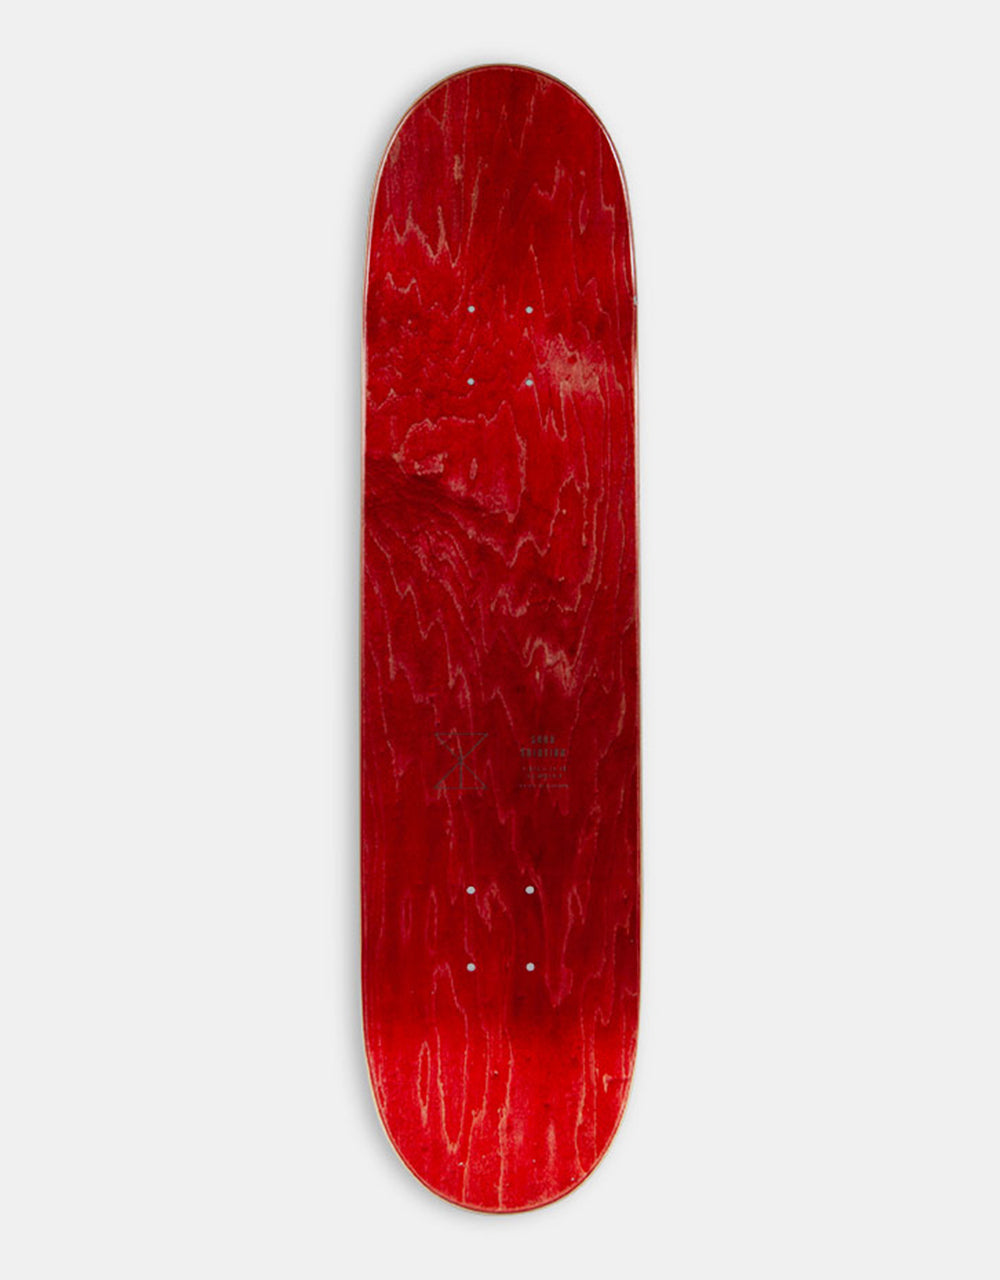 Sour Snape Camel Skateboard Deck - 8.375"